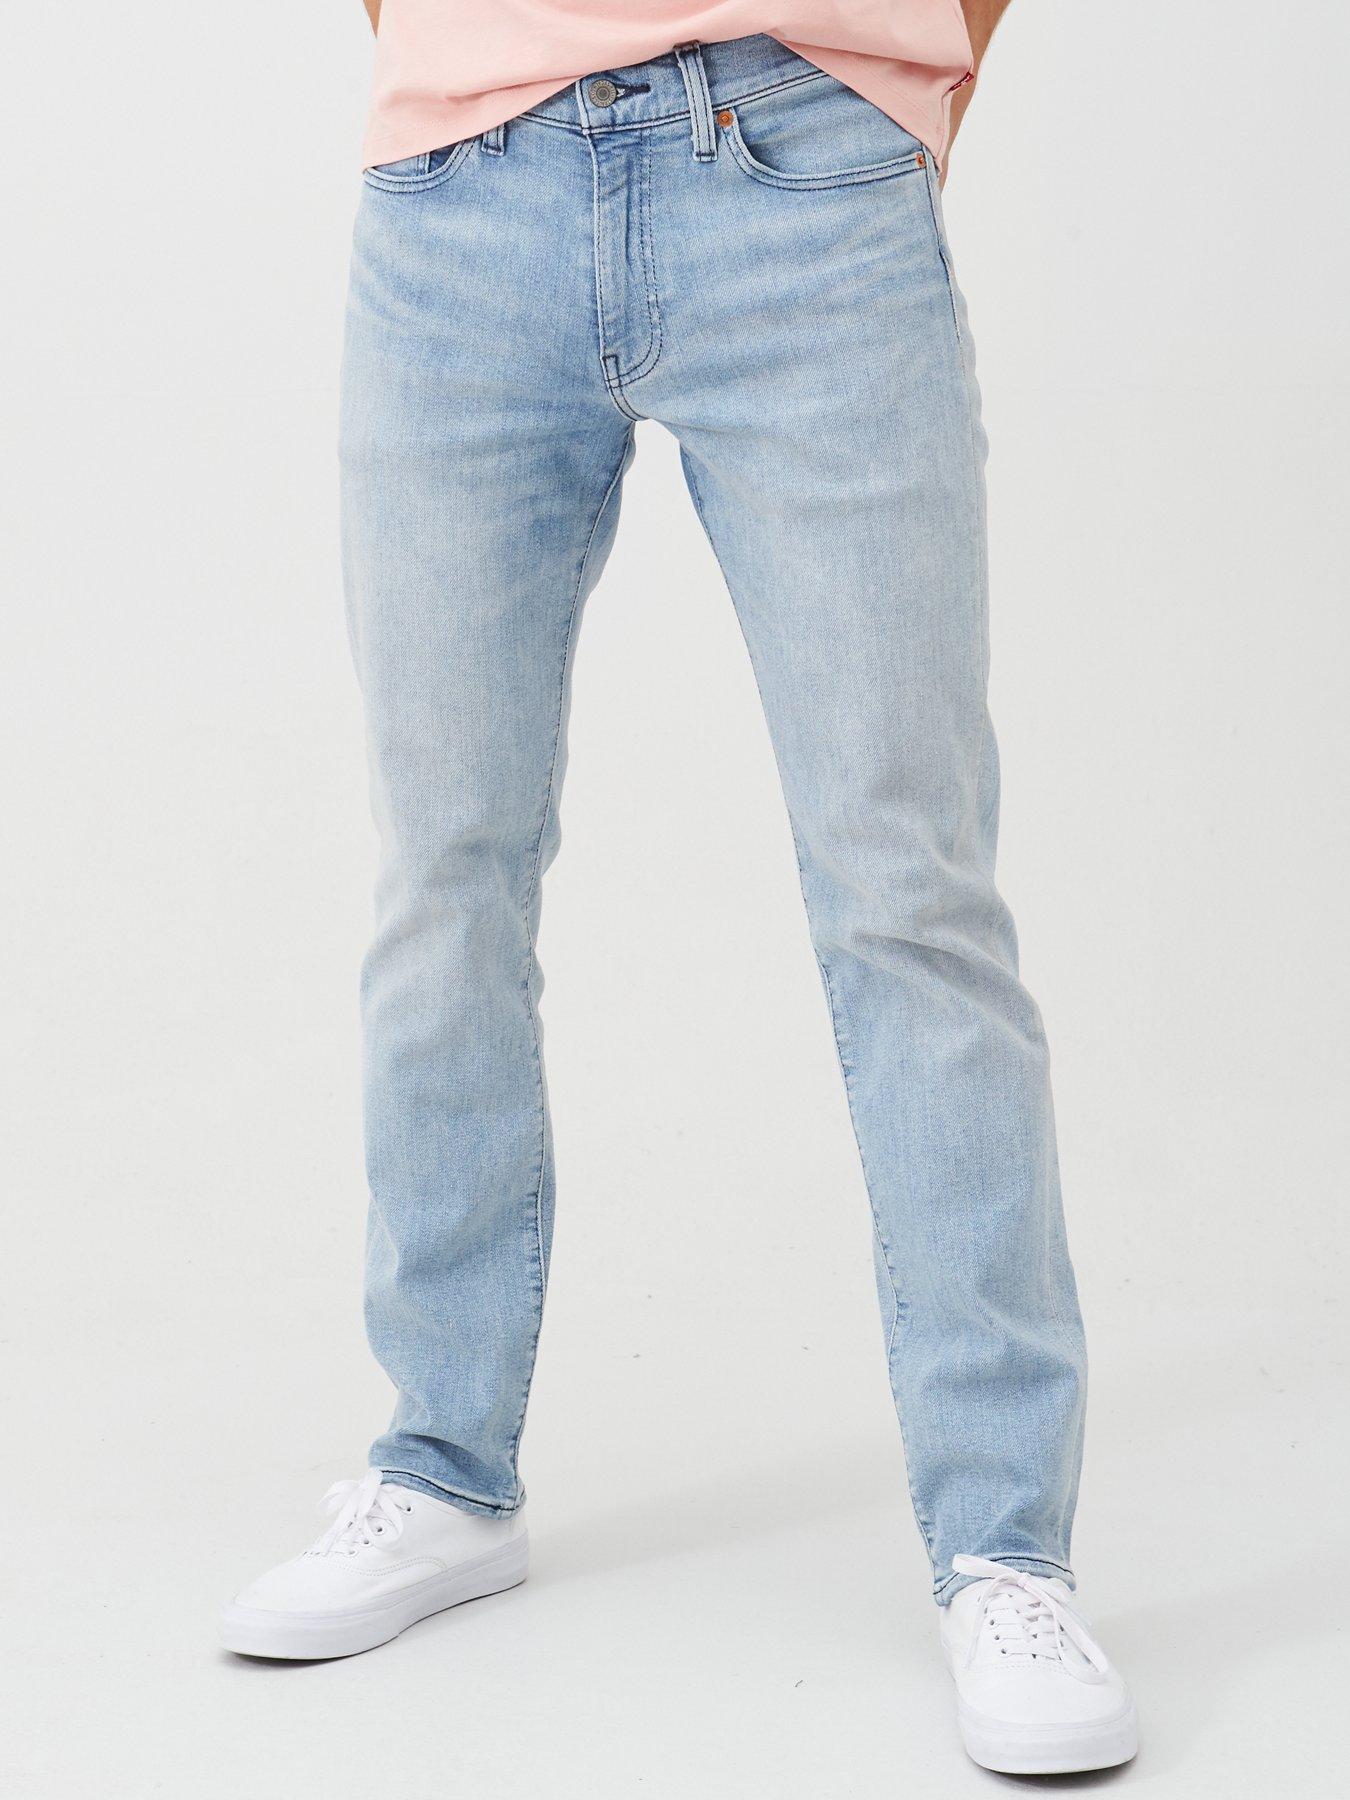 levis jeans 741